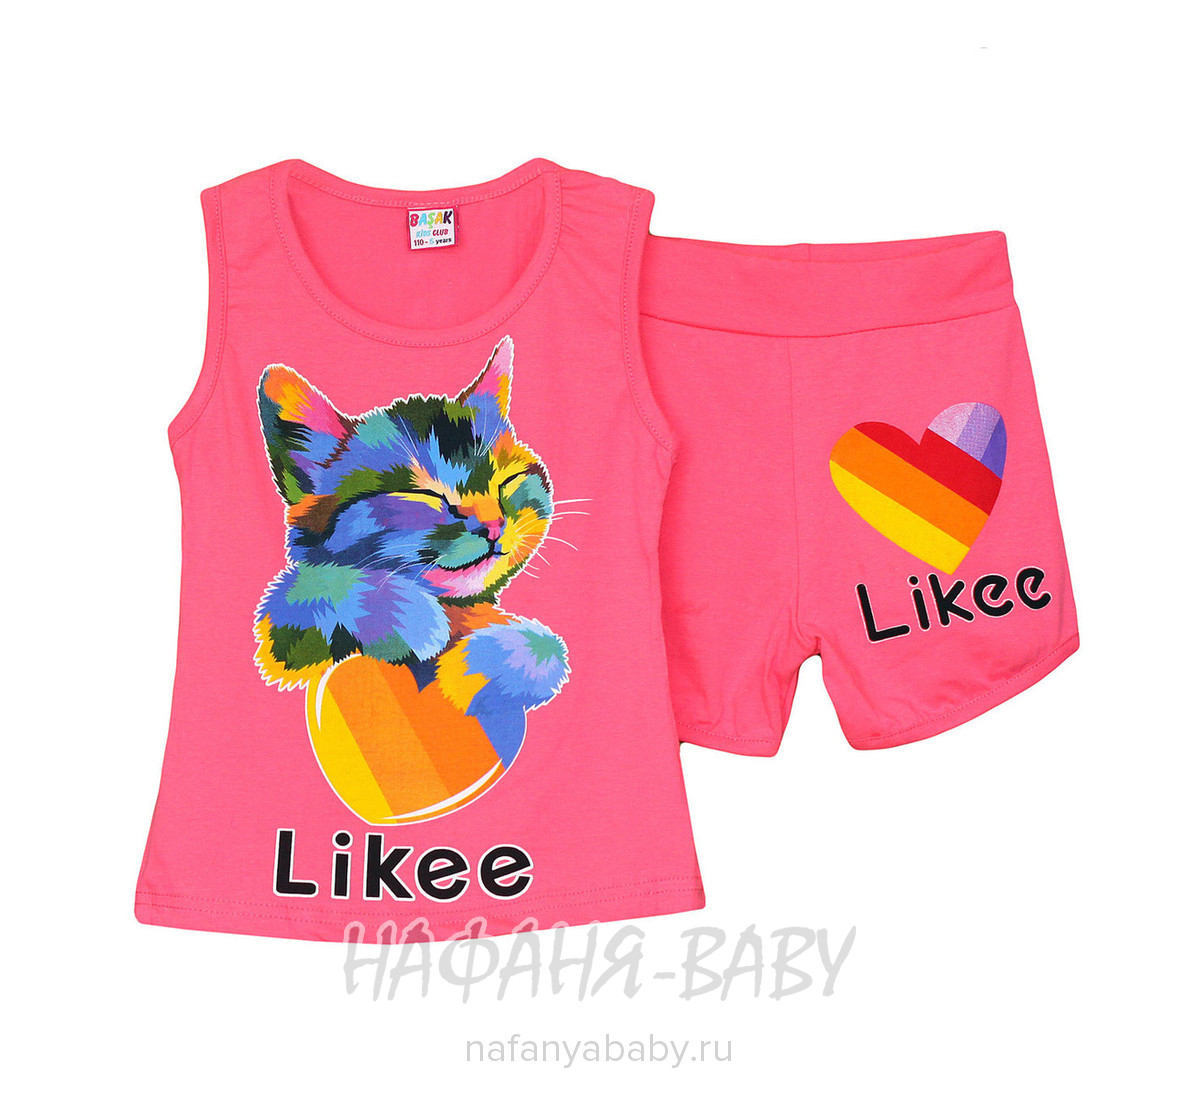 Детский костюм (майка+шорты) BASAK, купить в интернет магазине Нафаня. арт: 2670, цвет коралловый